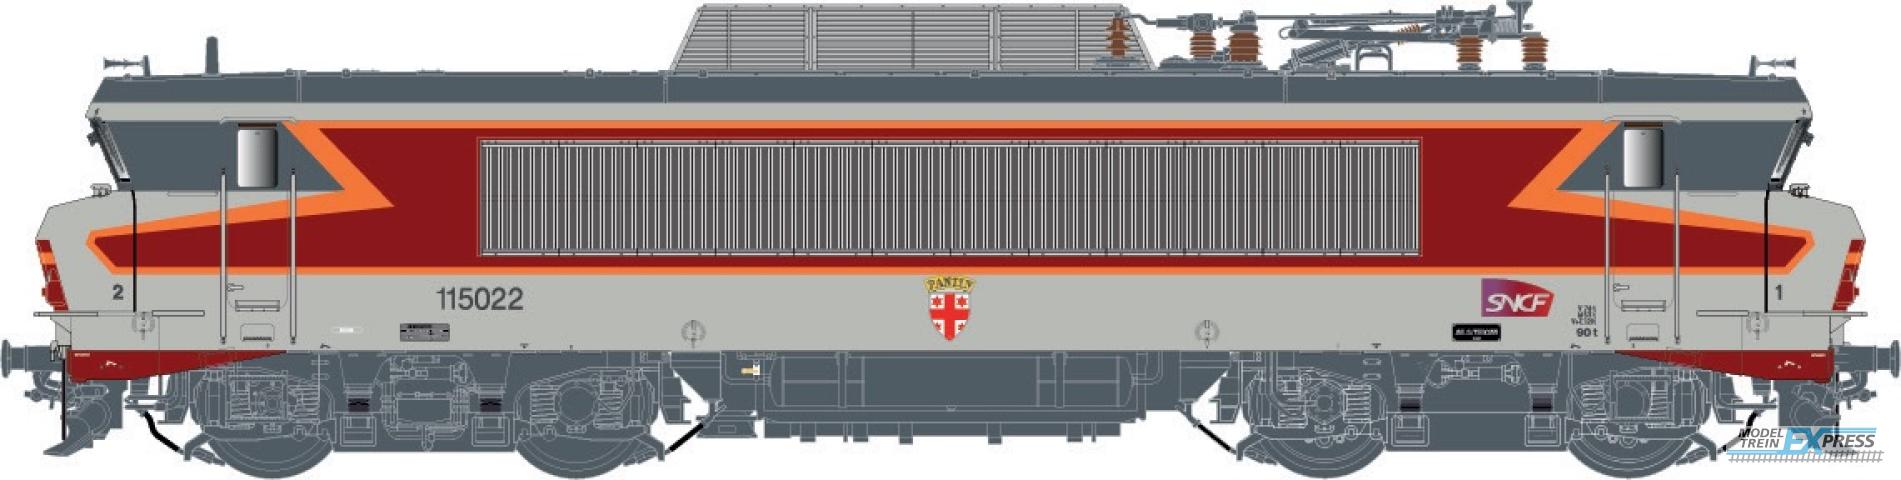 LS Models 10989 BB 15022, livrée "Arzens", gris béton,, 160 km/h, sigle Carmillon, blason Pantin, dépôt d'Archères  /  Ep. VI  /  SNCF  /  HO  /  AC  /  1 P.